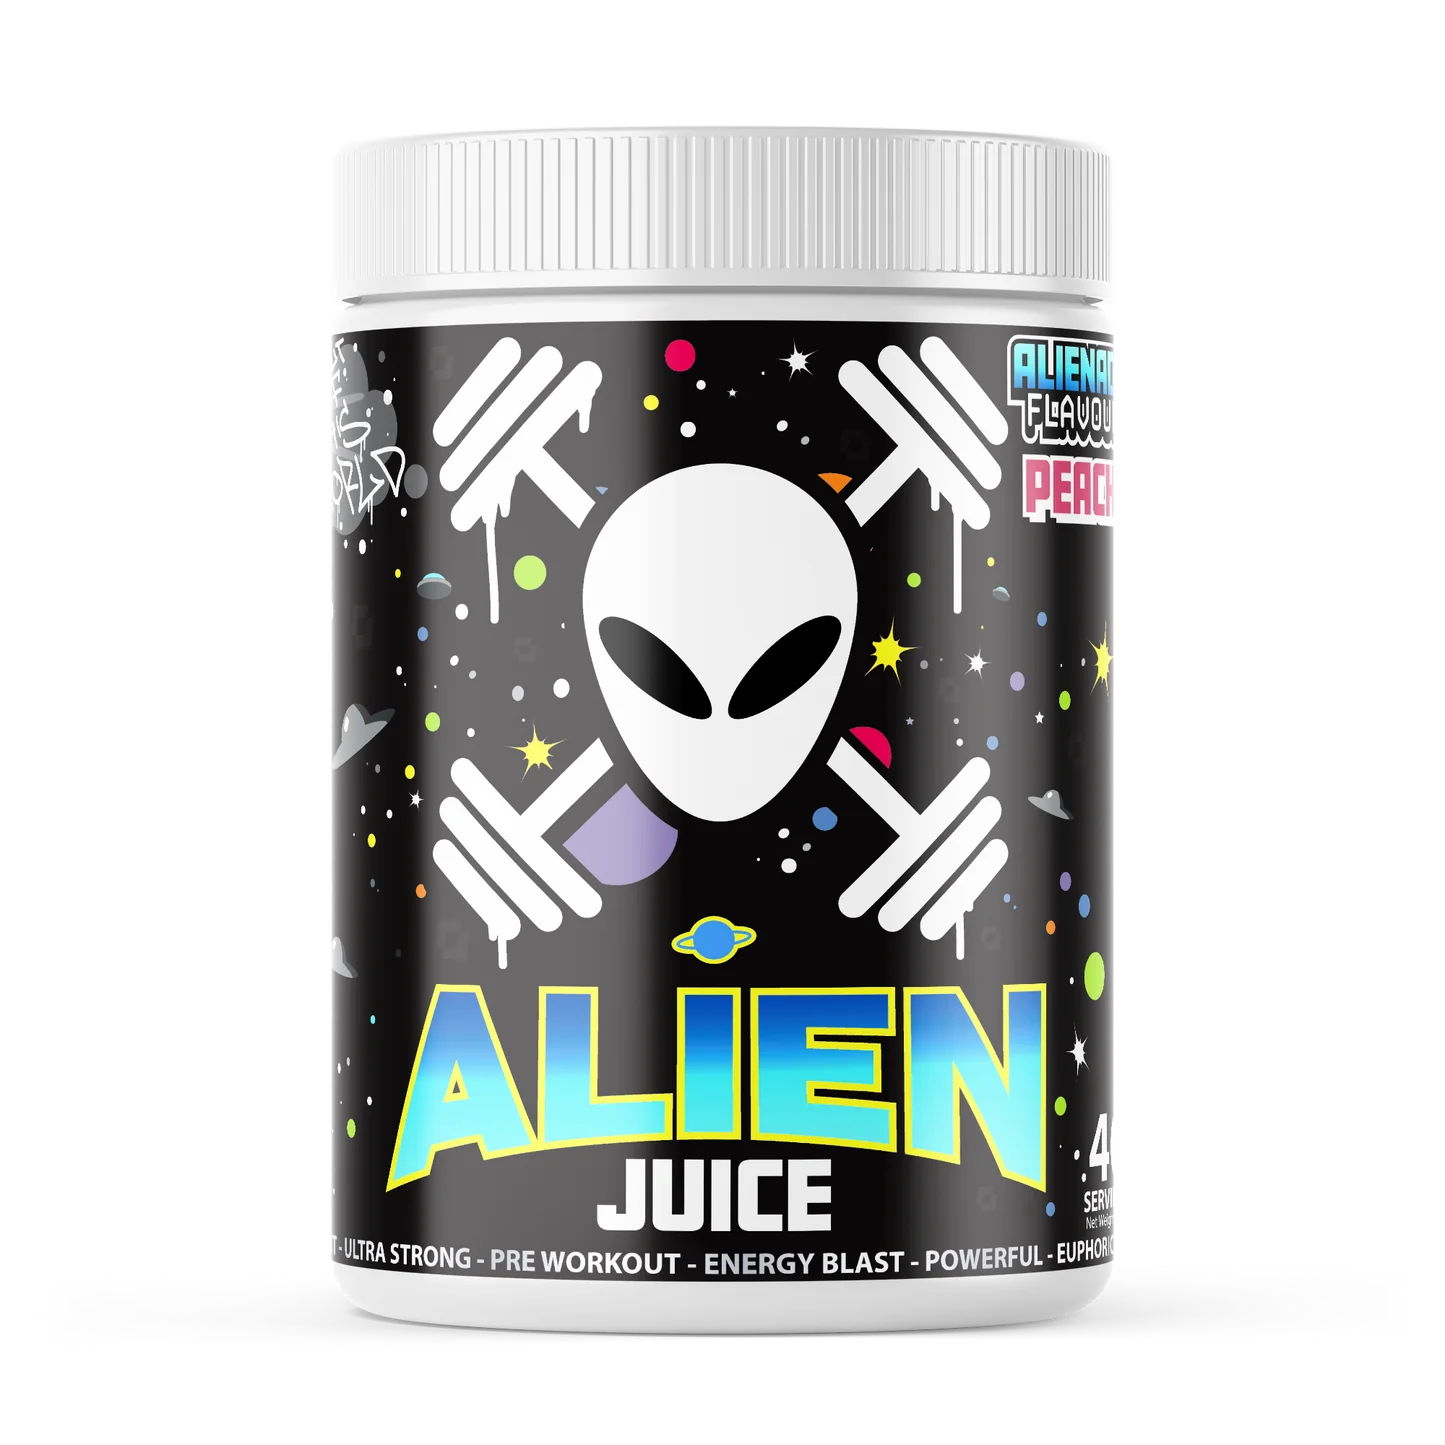 Gorillalpha Alien Juice Pre Workout Peach Flavour